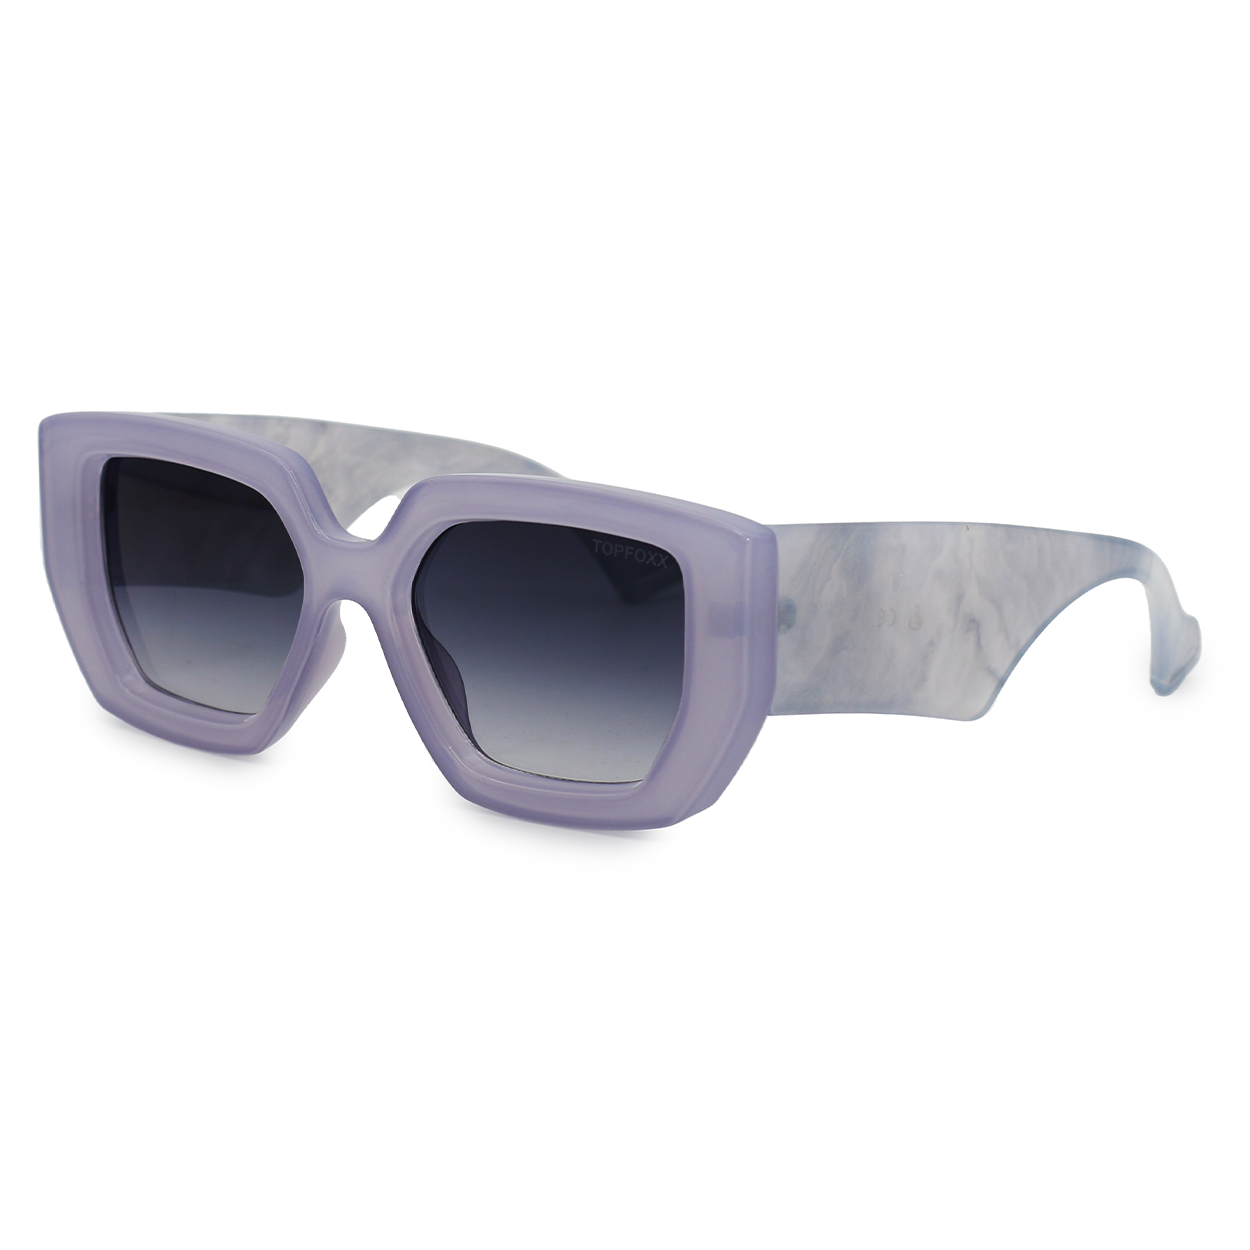 TopFoxx - Oversized Purple Sunglasses - Incognito Sunnies - Side Profile